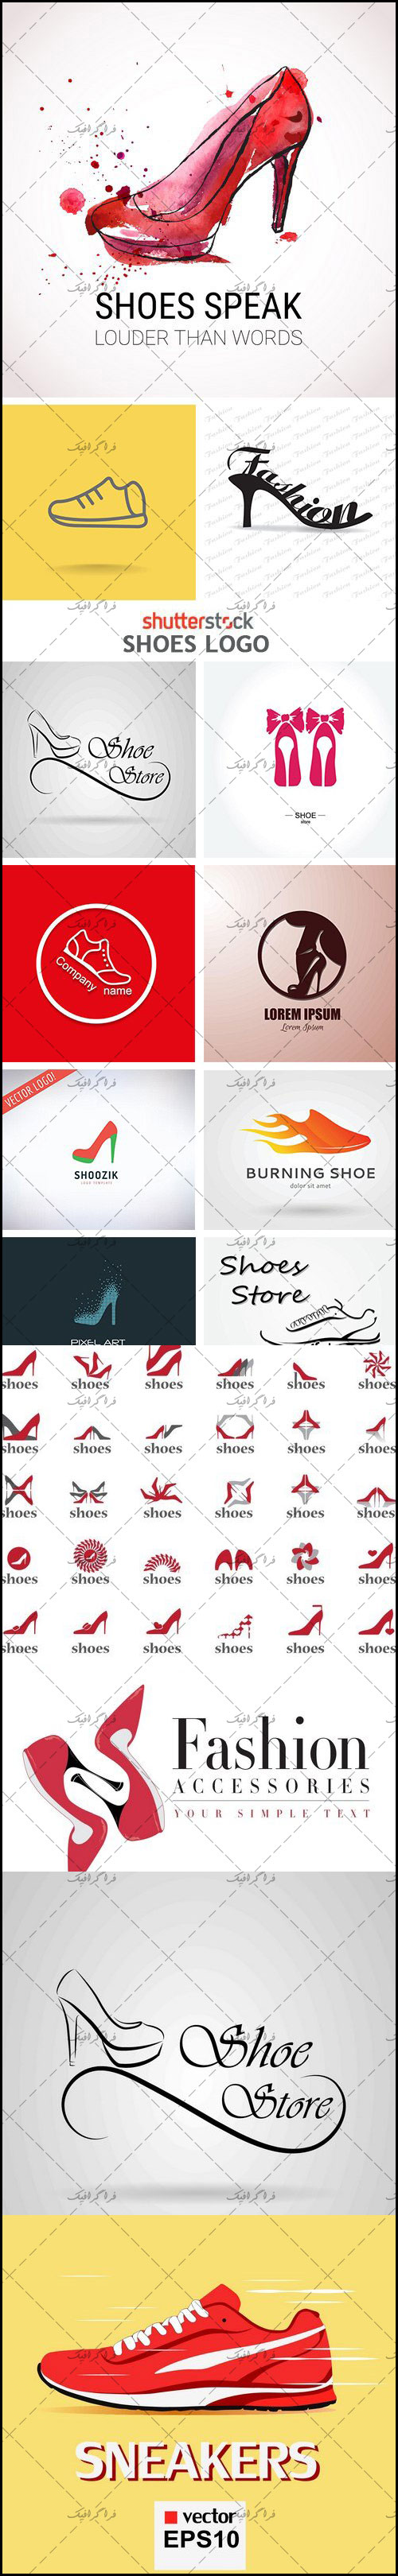 دانلود لوگو های کفش - Shoe Logos